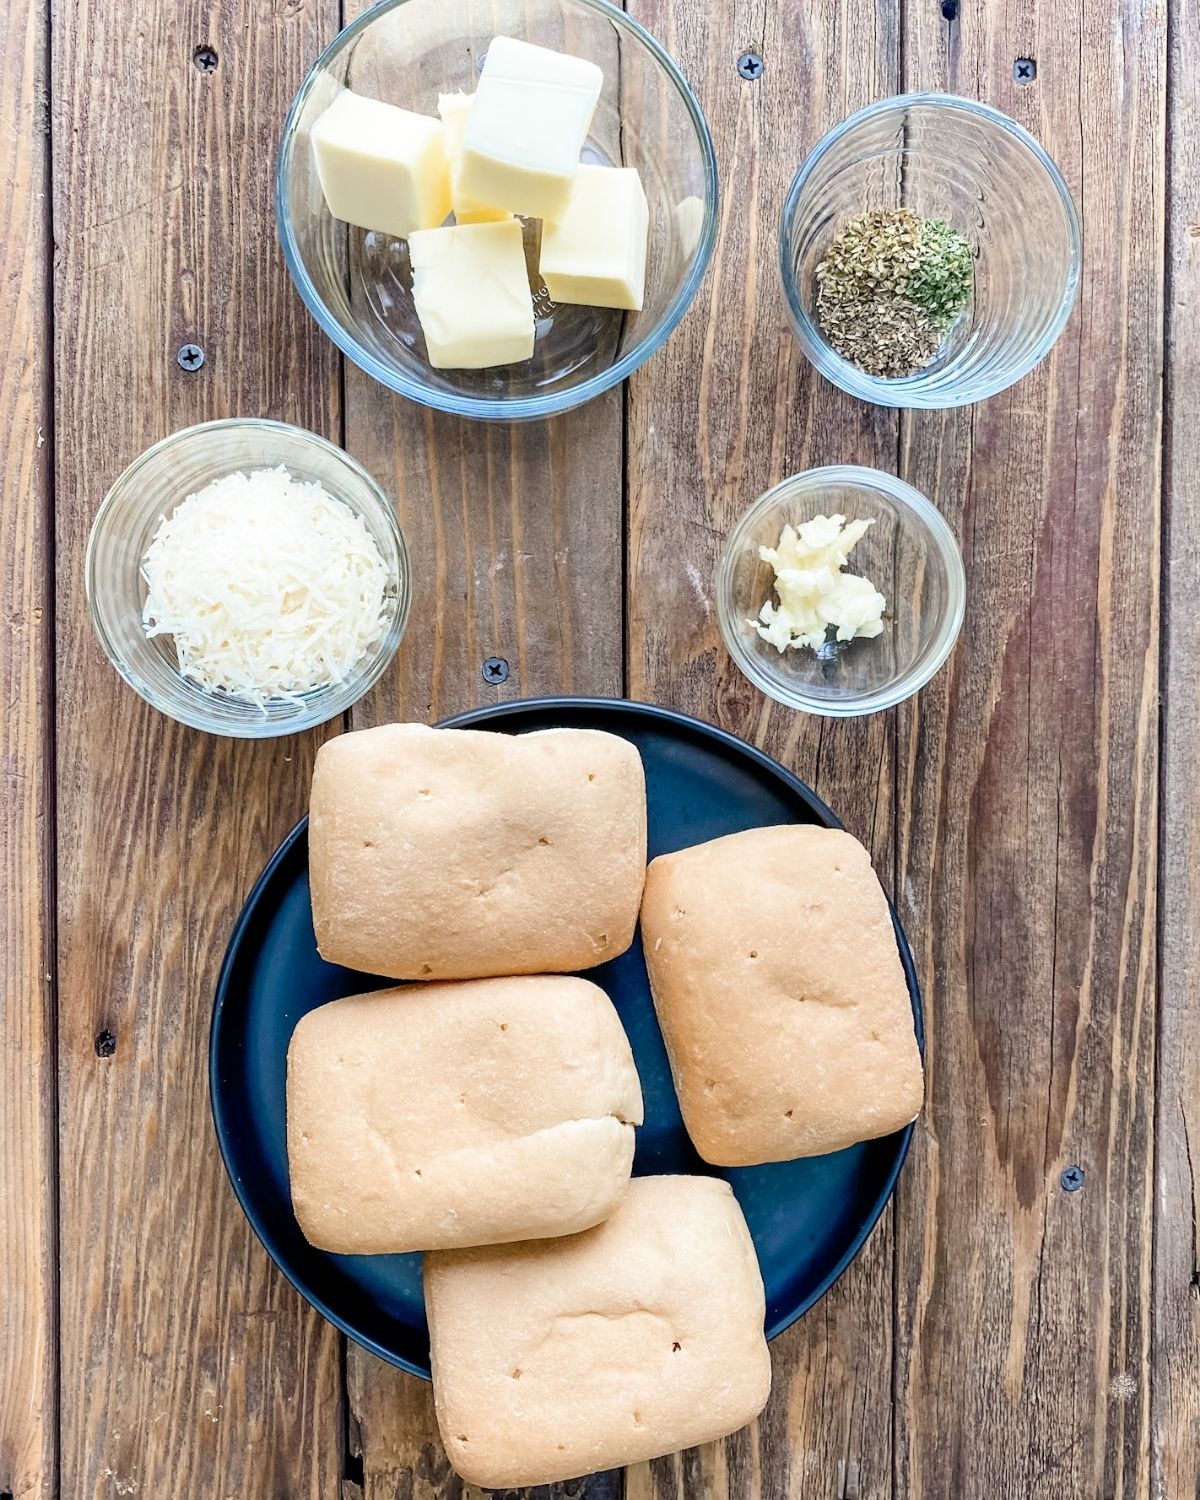 ingredients to make gluten-free garlic bread